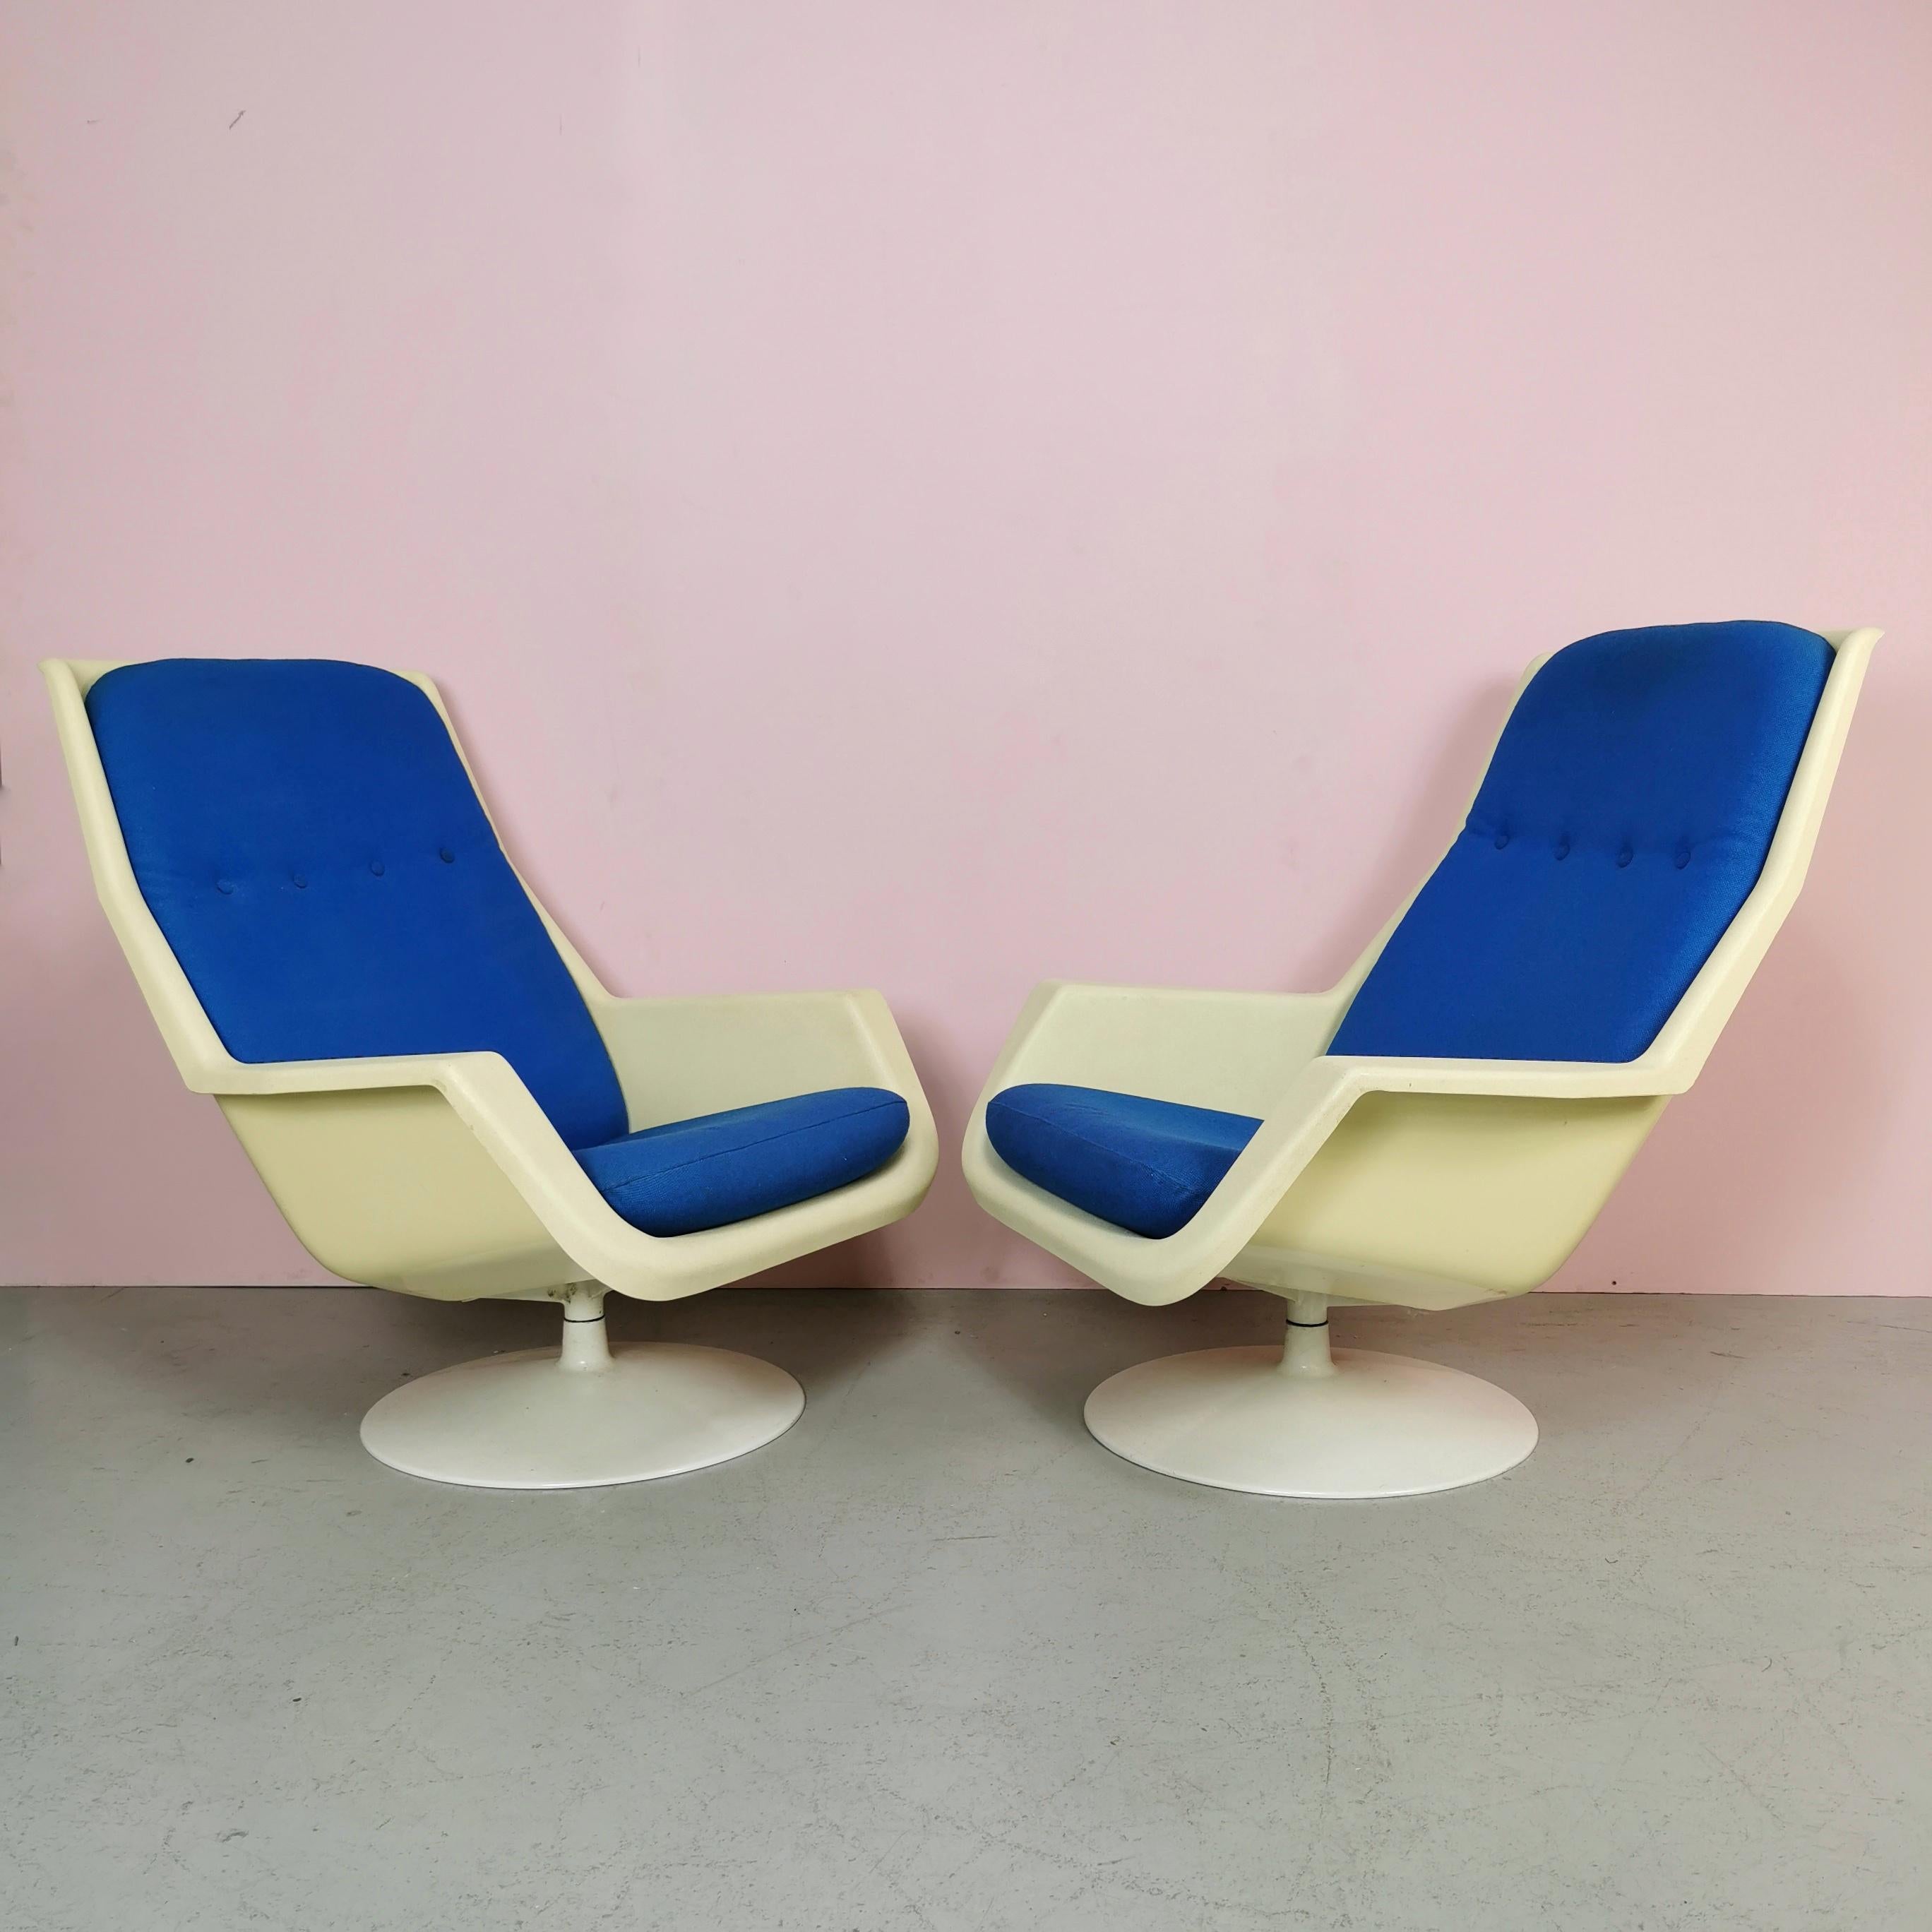 a paire de fauteuils fabriqués en Angleterre par Hille et conçus par Robin Day au début des années 1970. Base en métal, coque en plastique et coussins en tissu bleu. Les fauteuils sont en très bon état.
présentent de légères marques d'époque
un